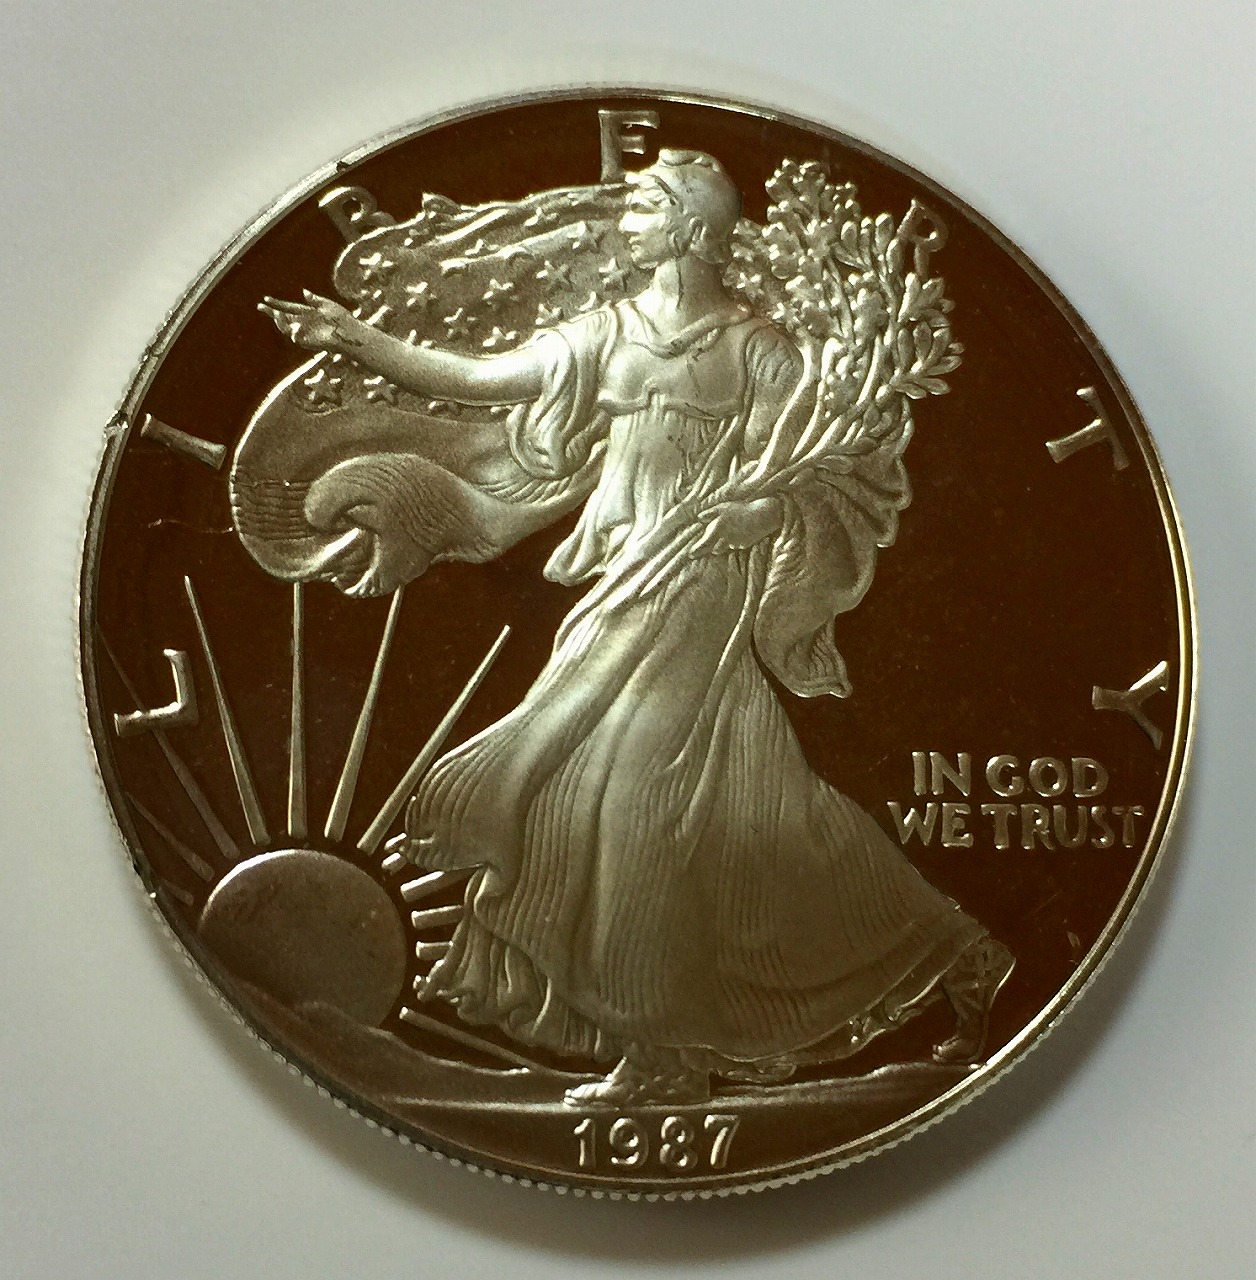 アメリカ銀貨 1オンス イーグル 1987年 | 収集ワールド